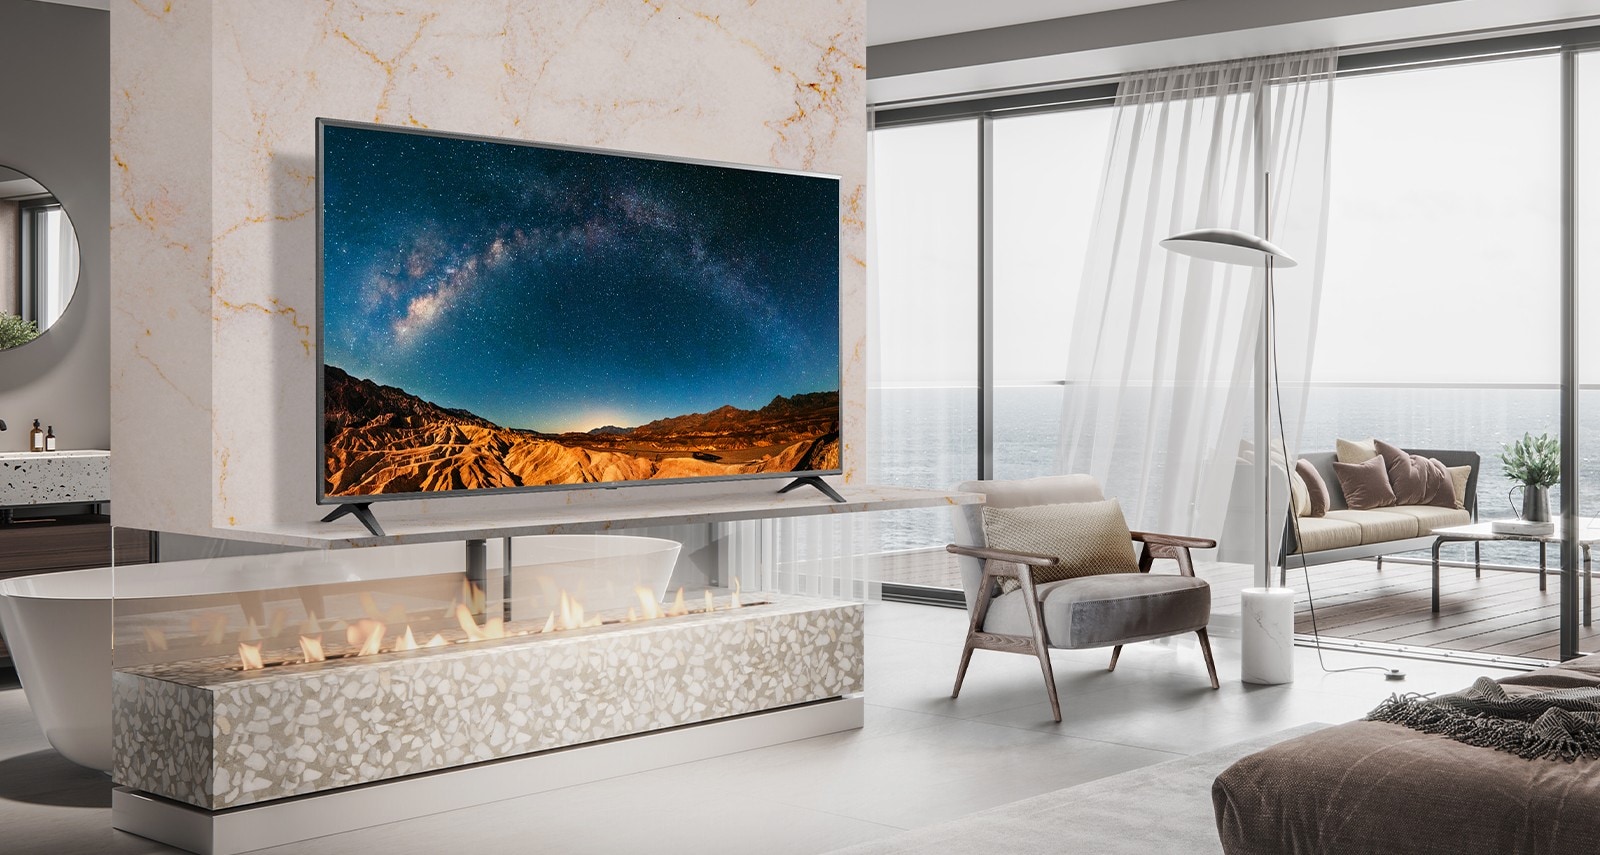 W prostej sypialni z widokiem na morze na półce ściennej stoi telewizor. Błękitna sceneria morska wygląda jasno i wyraźnie na ekranie telewizora.